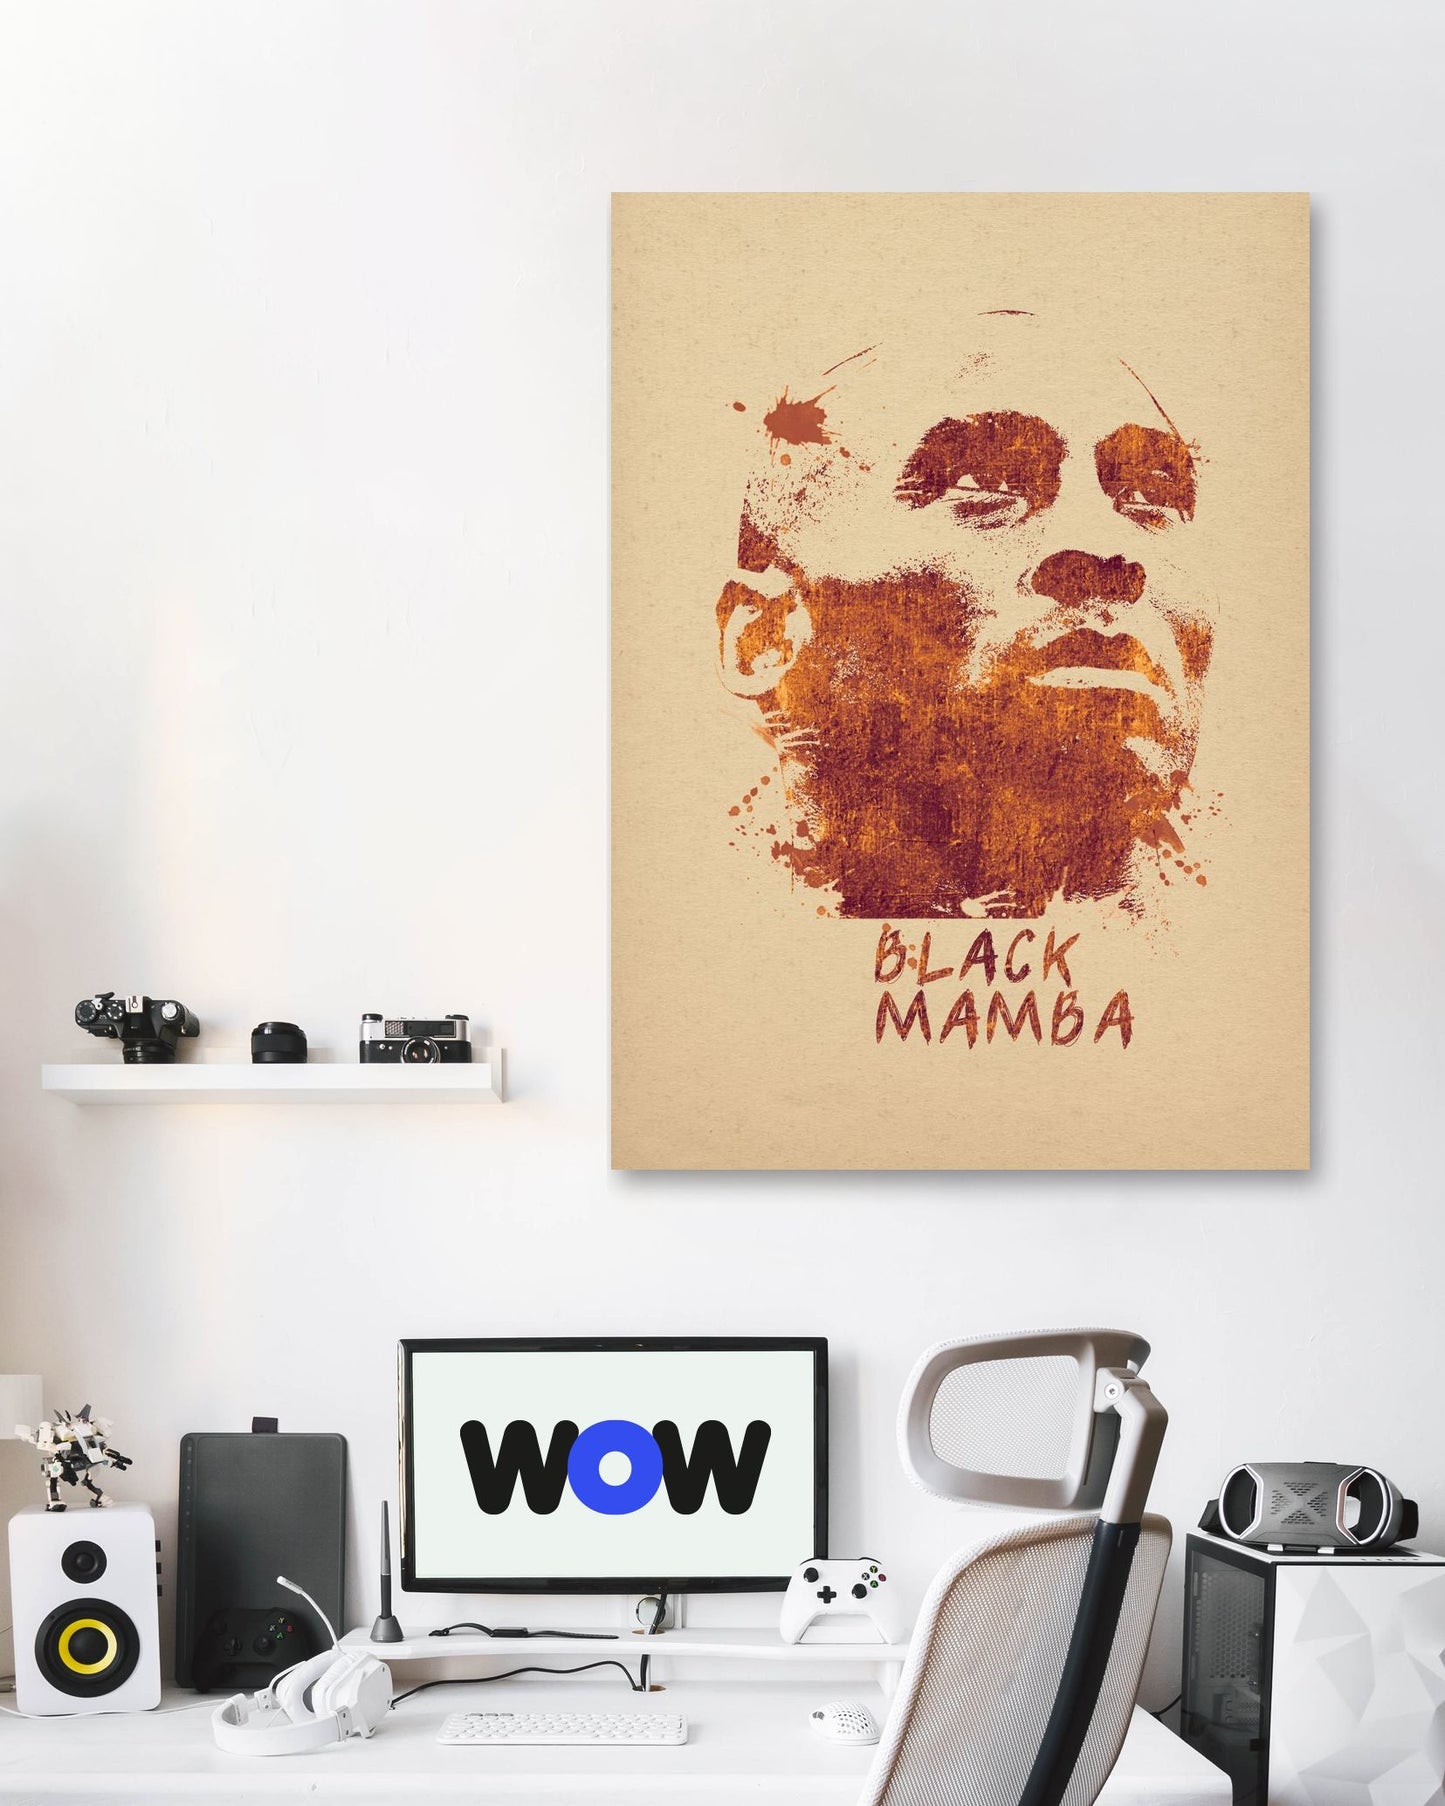 Black Mamba Posters - @mamazuka